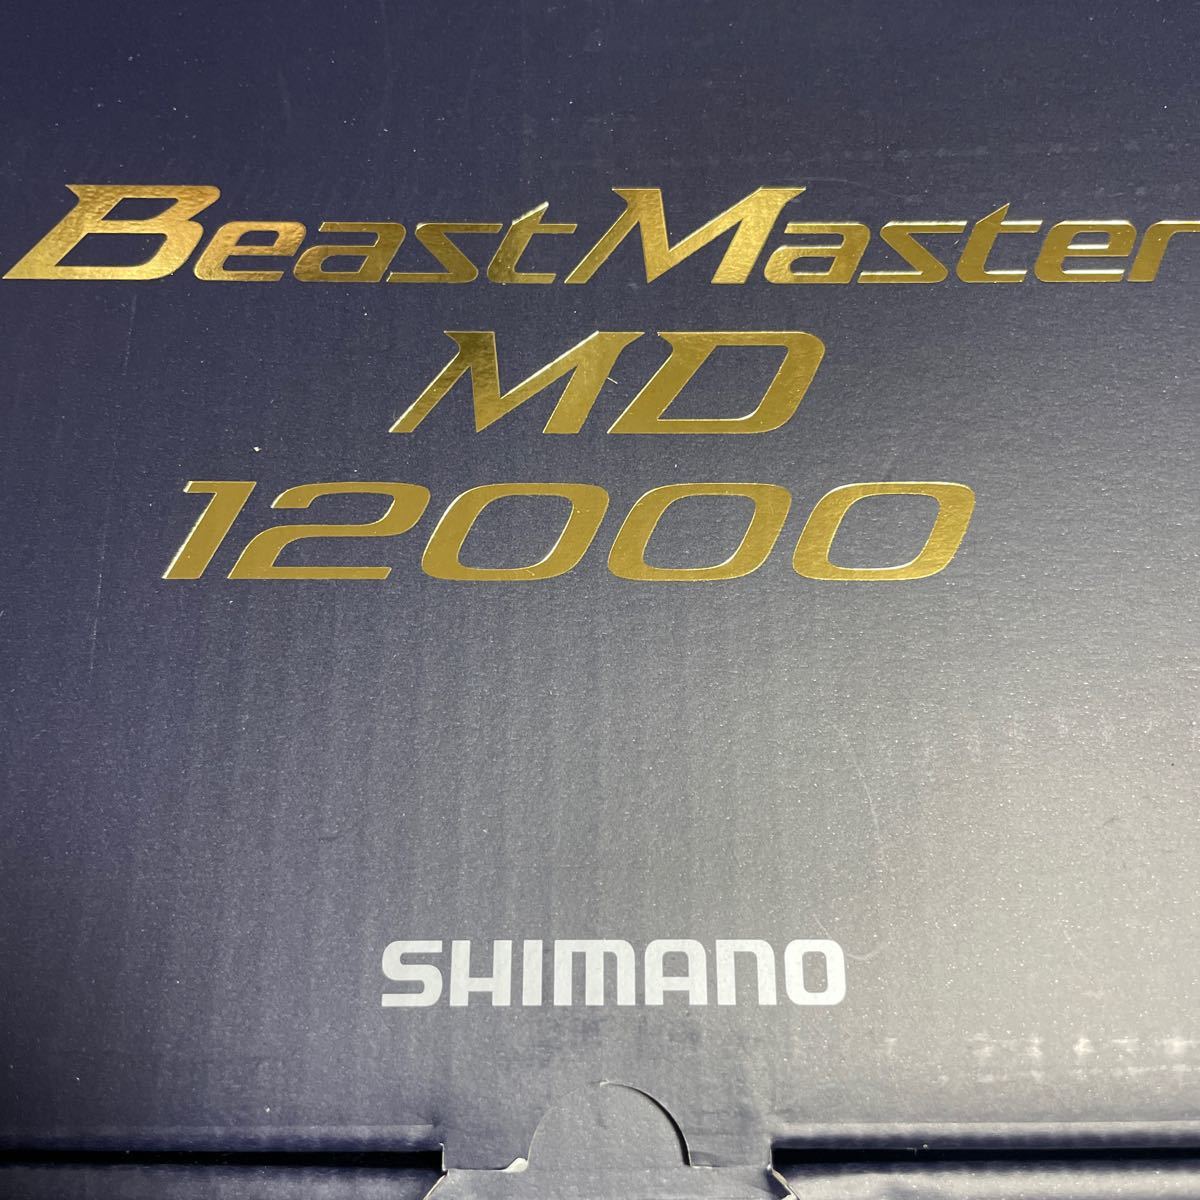 23 ビーストマスター MD 12000 未使用品_画像1